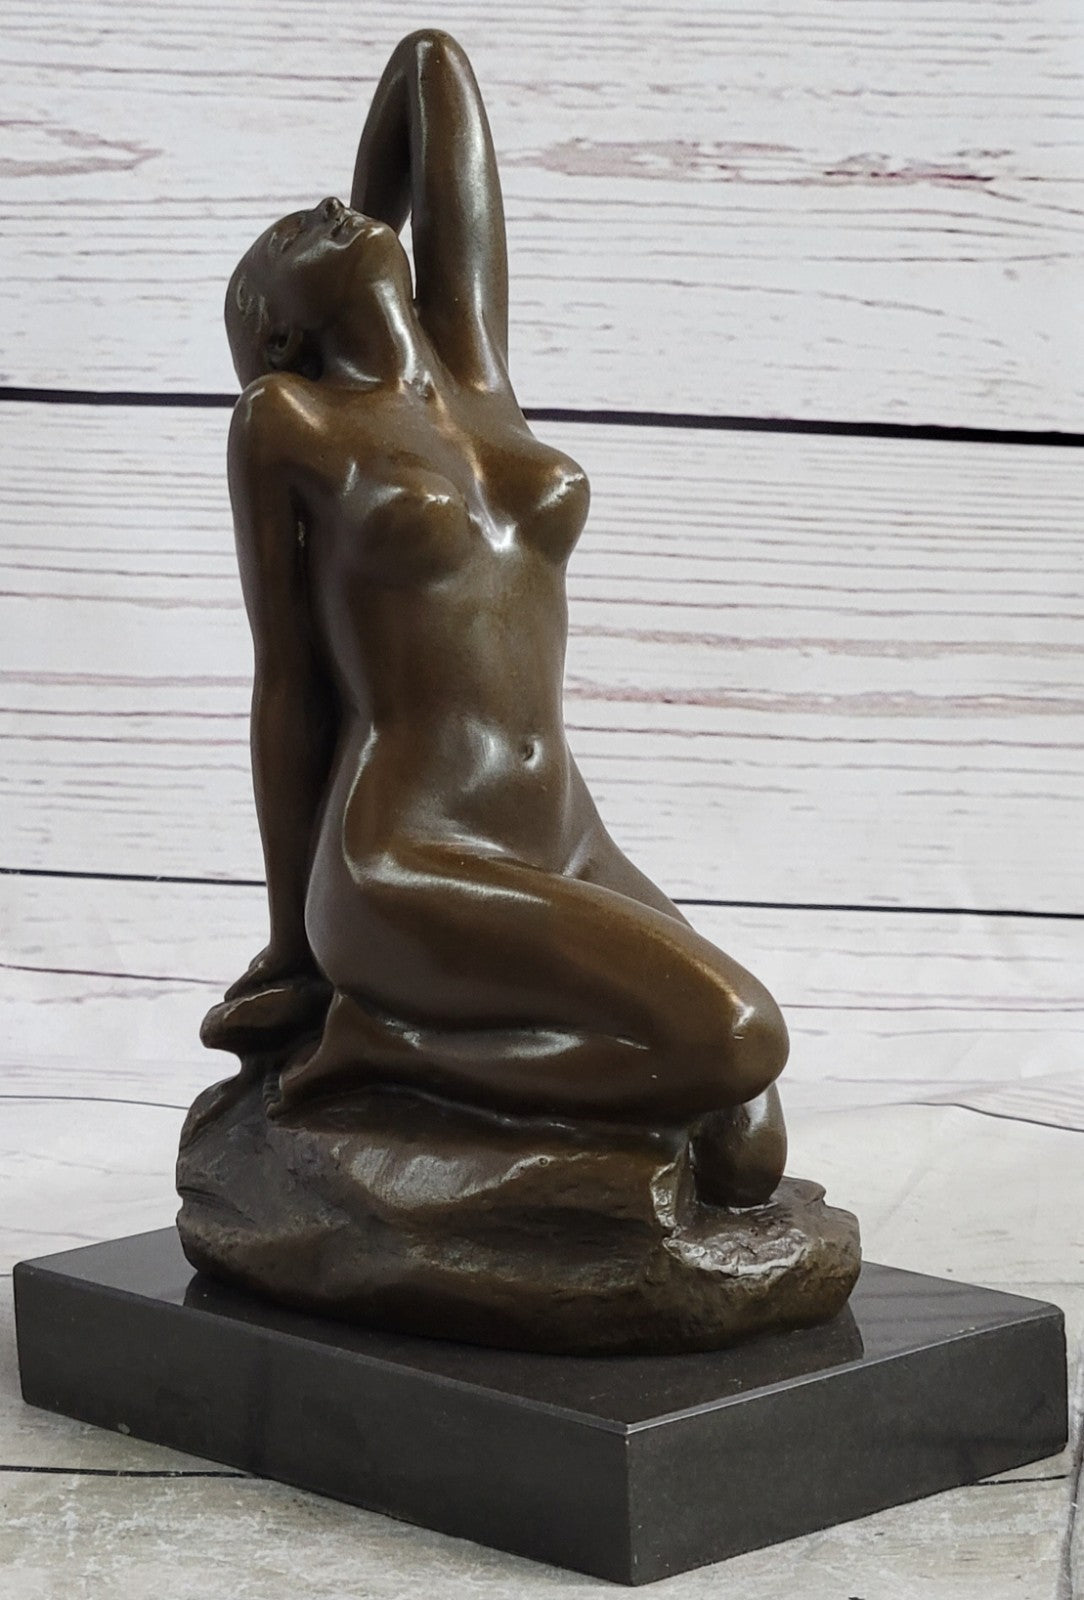 Bronze Sculpture Hand Made Original Patoue Nude Female on the Rock Figurine